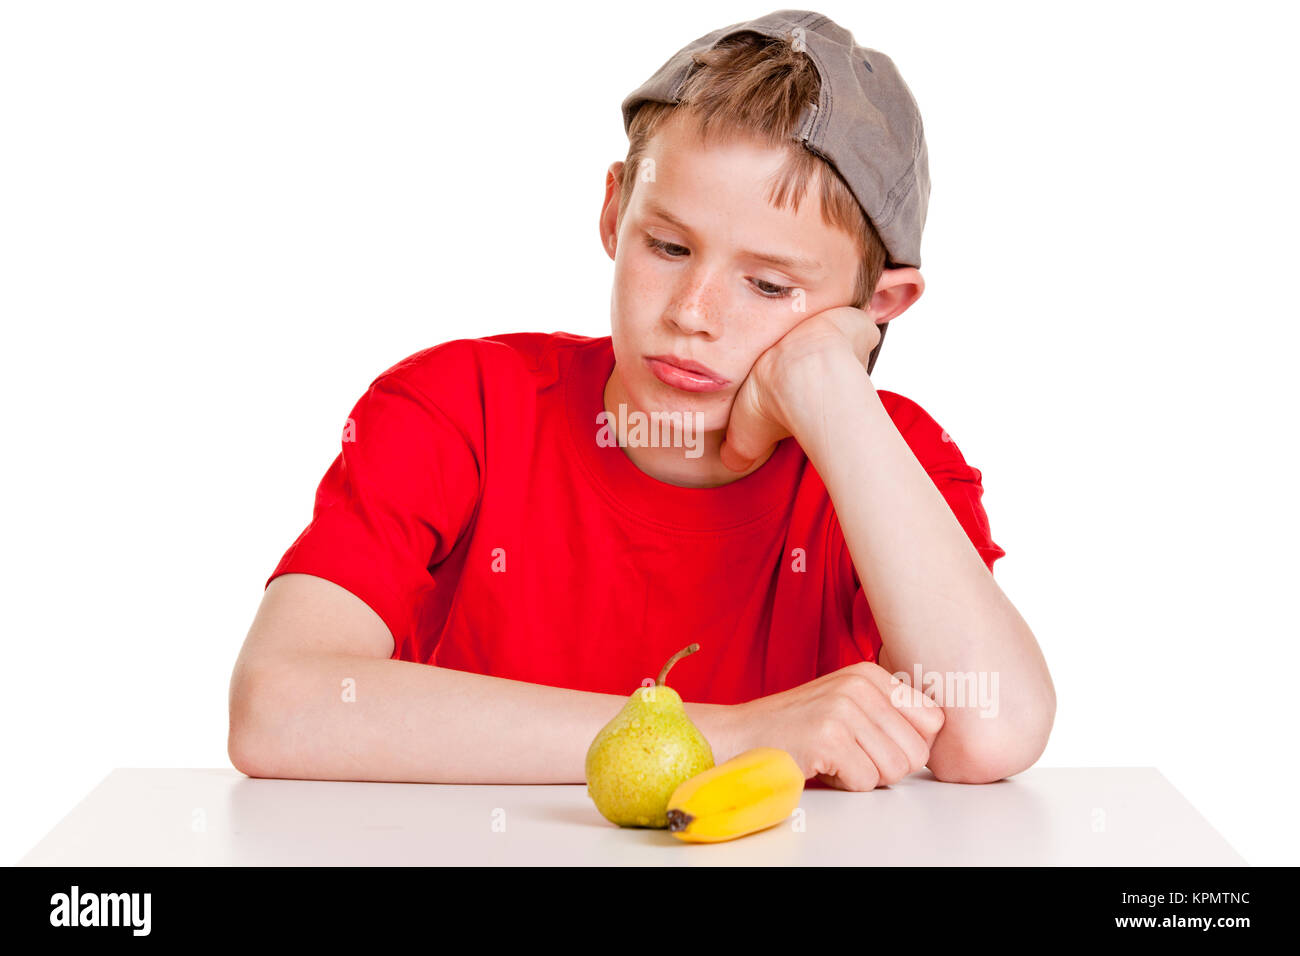 Jeune garçon morose regardant fixement une banane mûre et de poire Banque D'Images